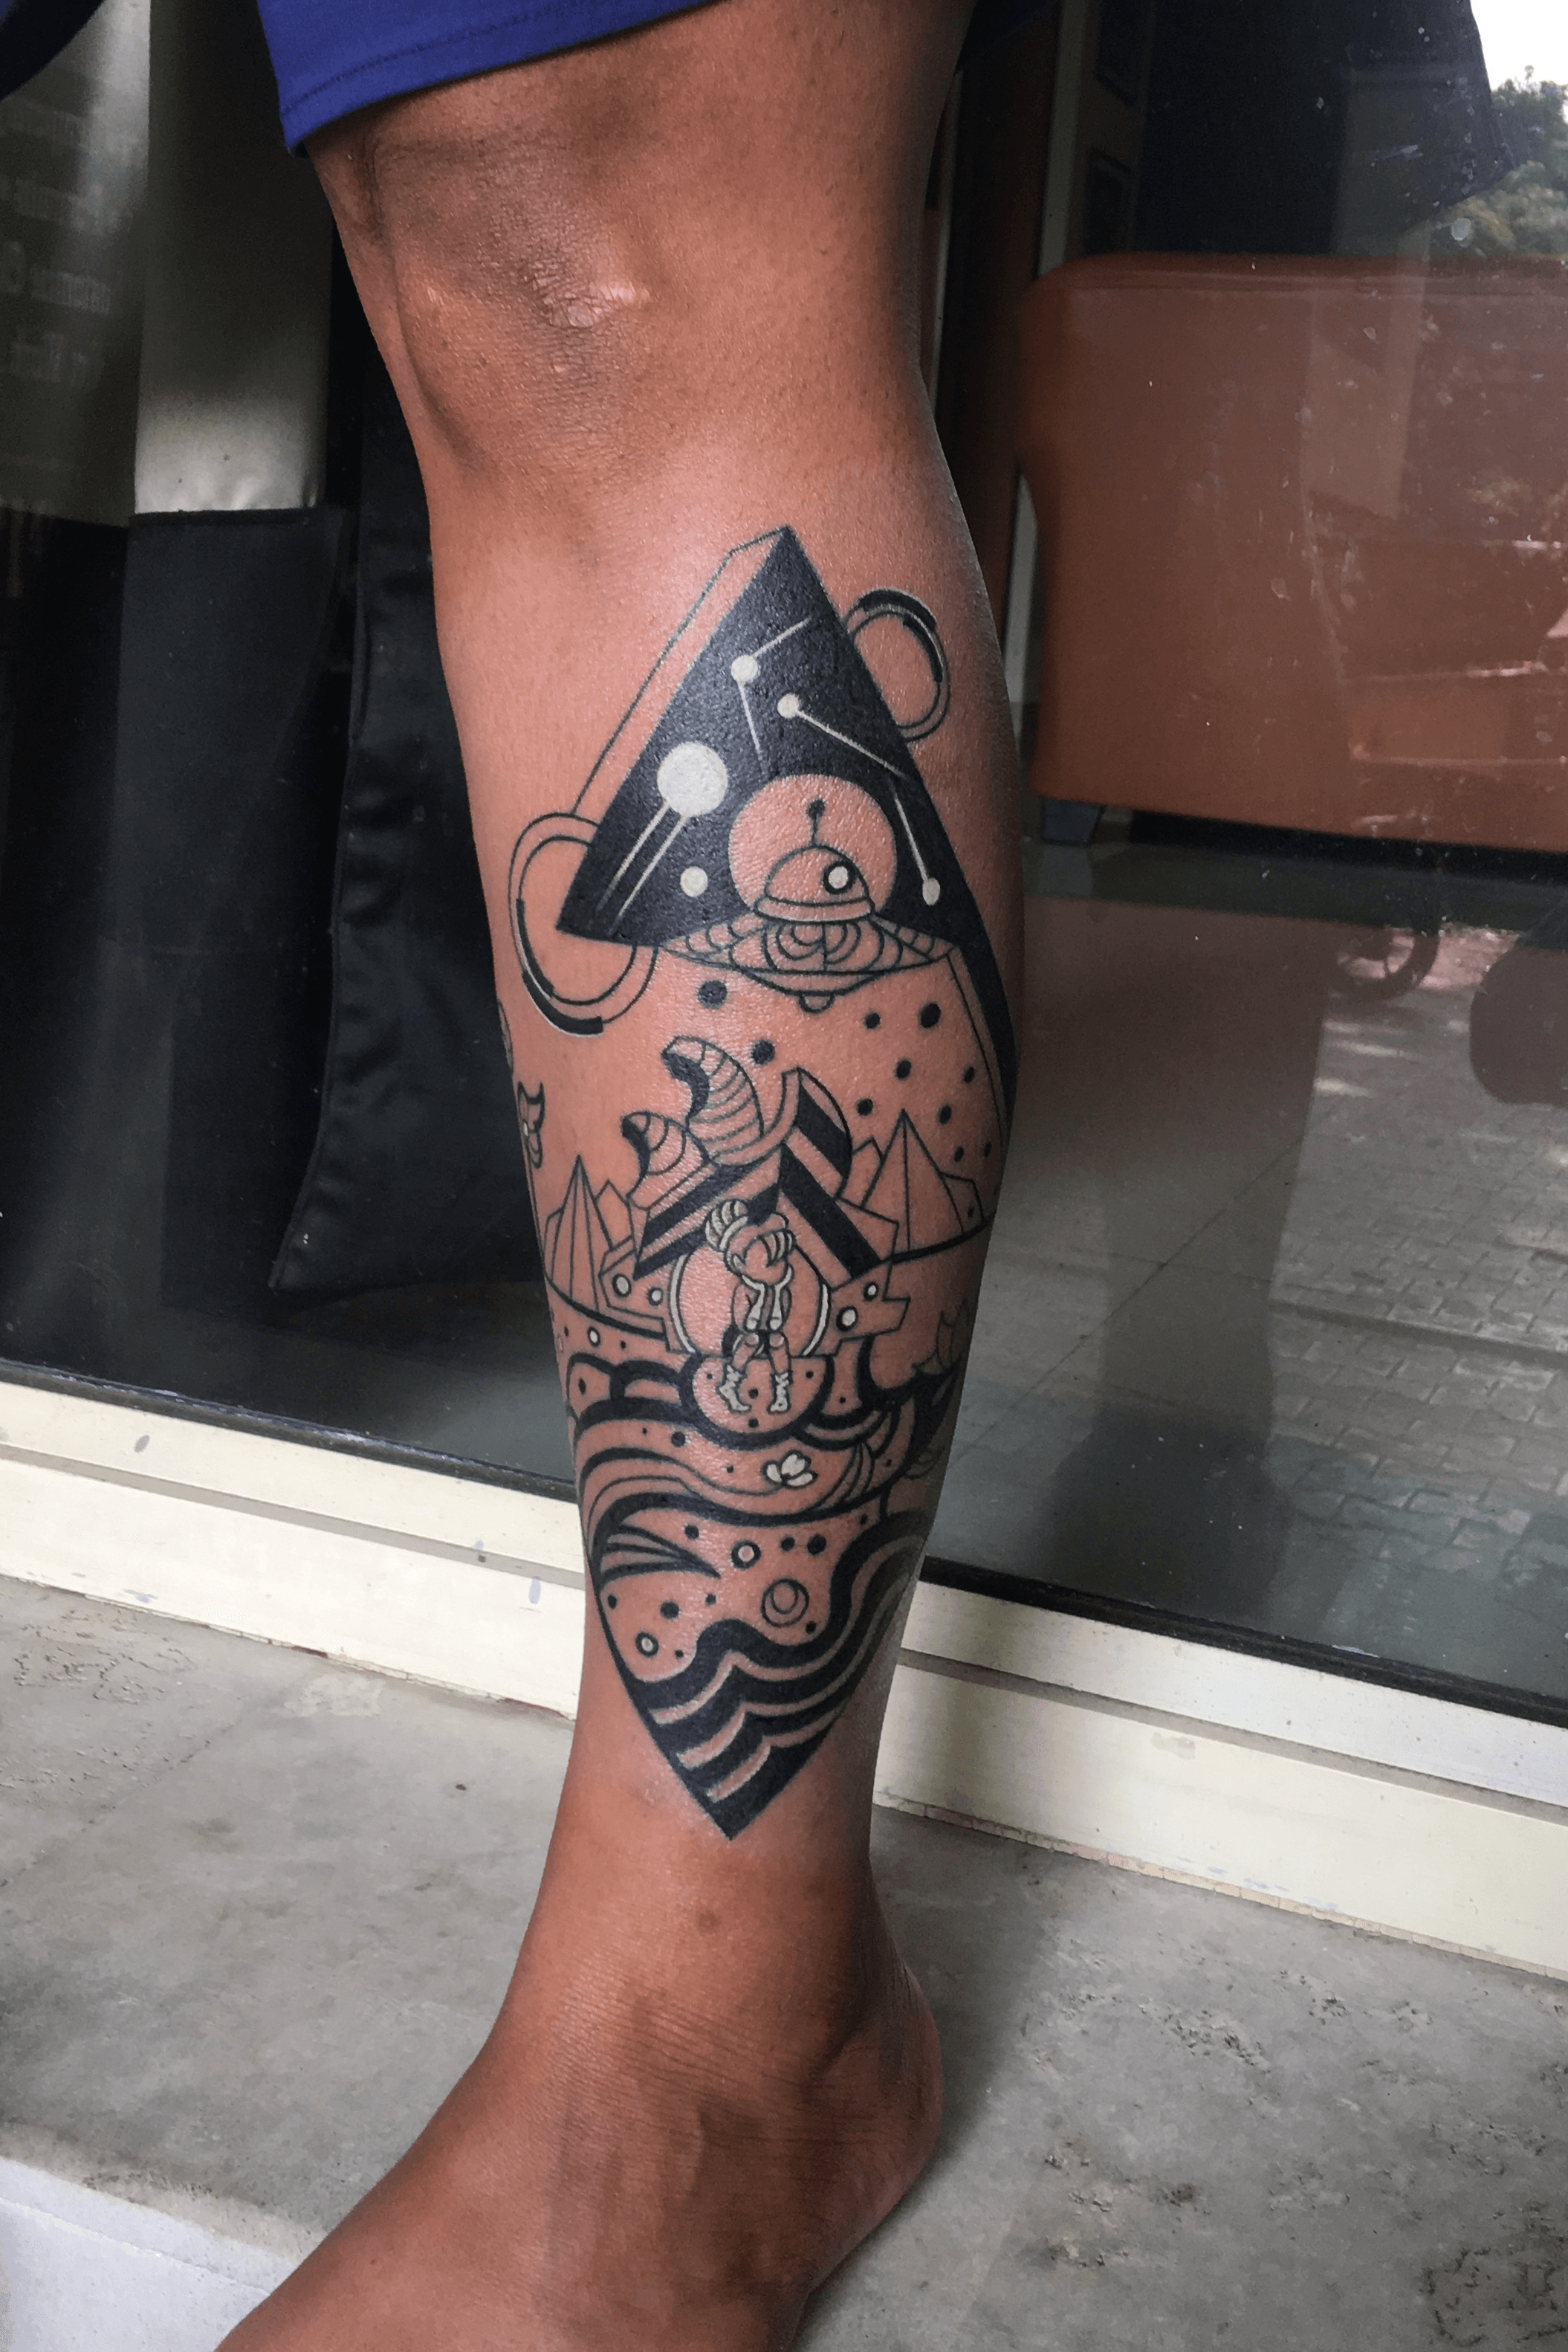 Odyssey by badbox  Assassins creed tattoo Spartan tattoo Warrior tattoos